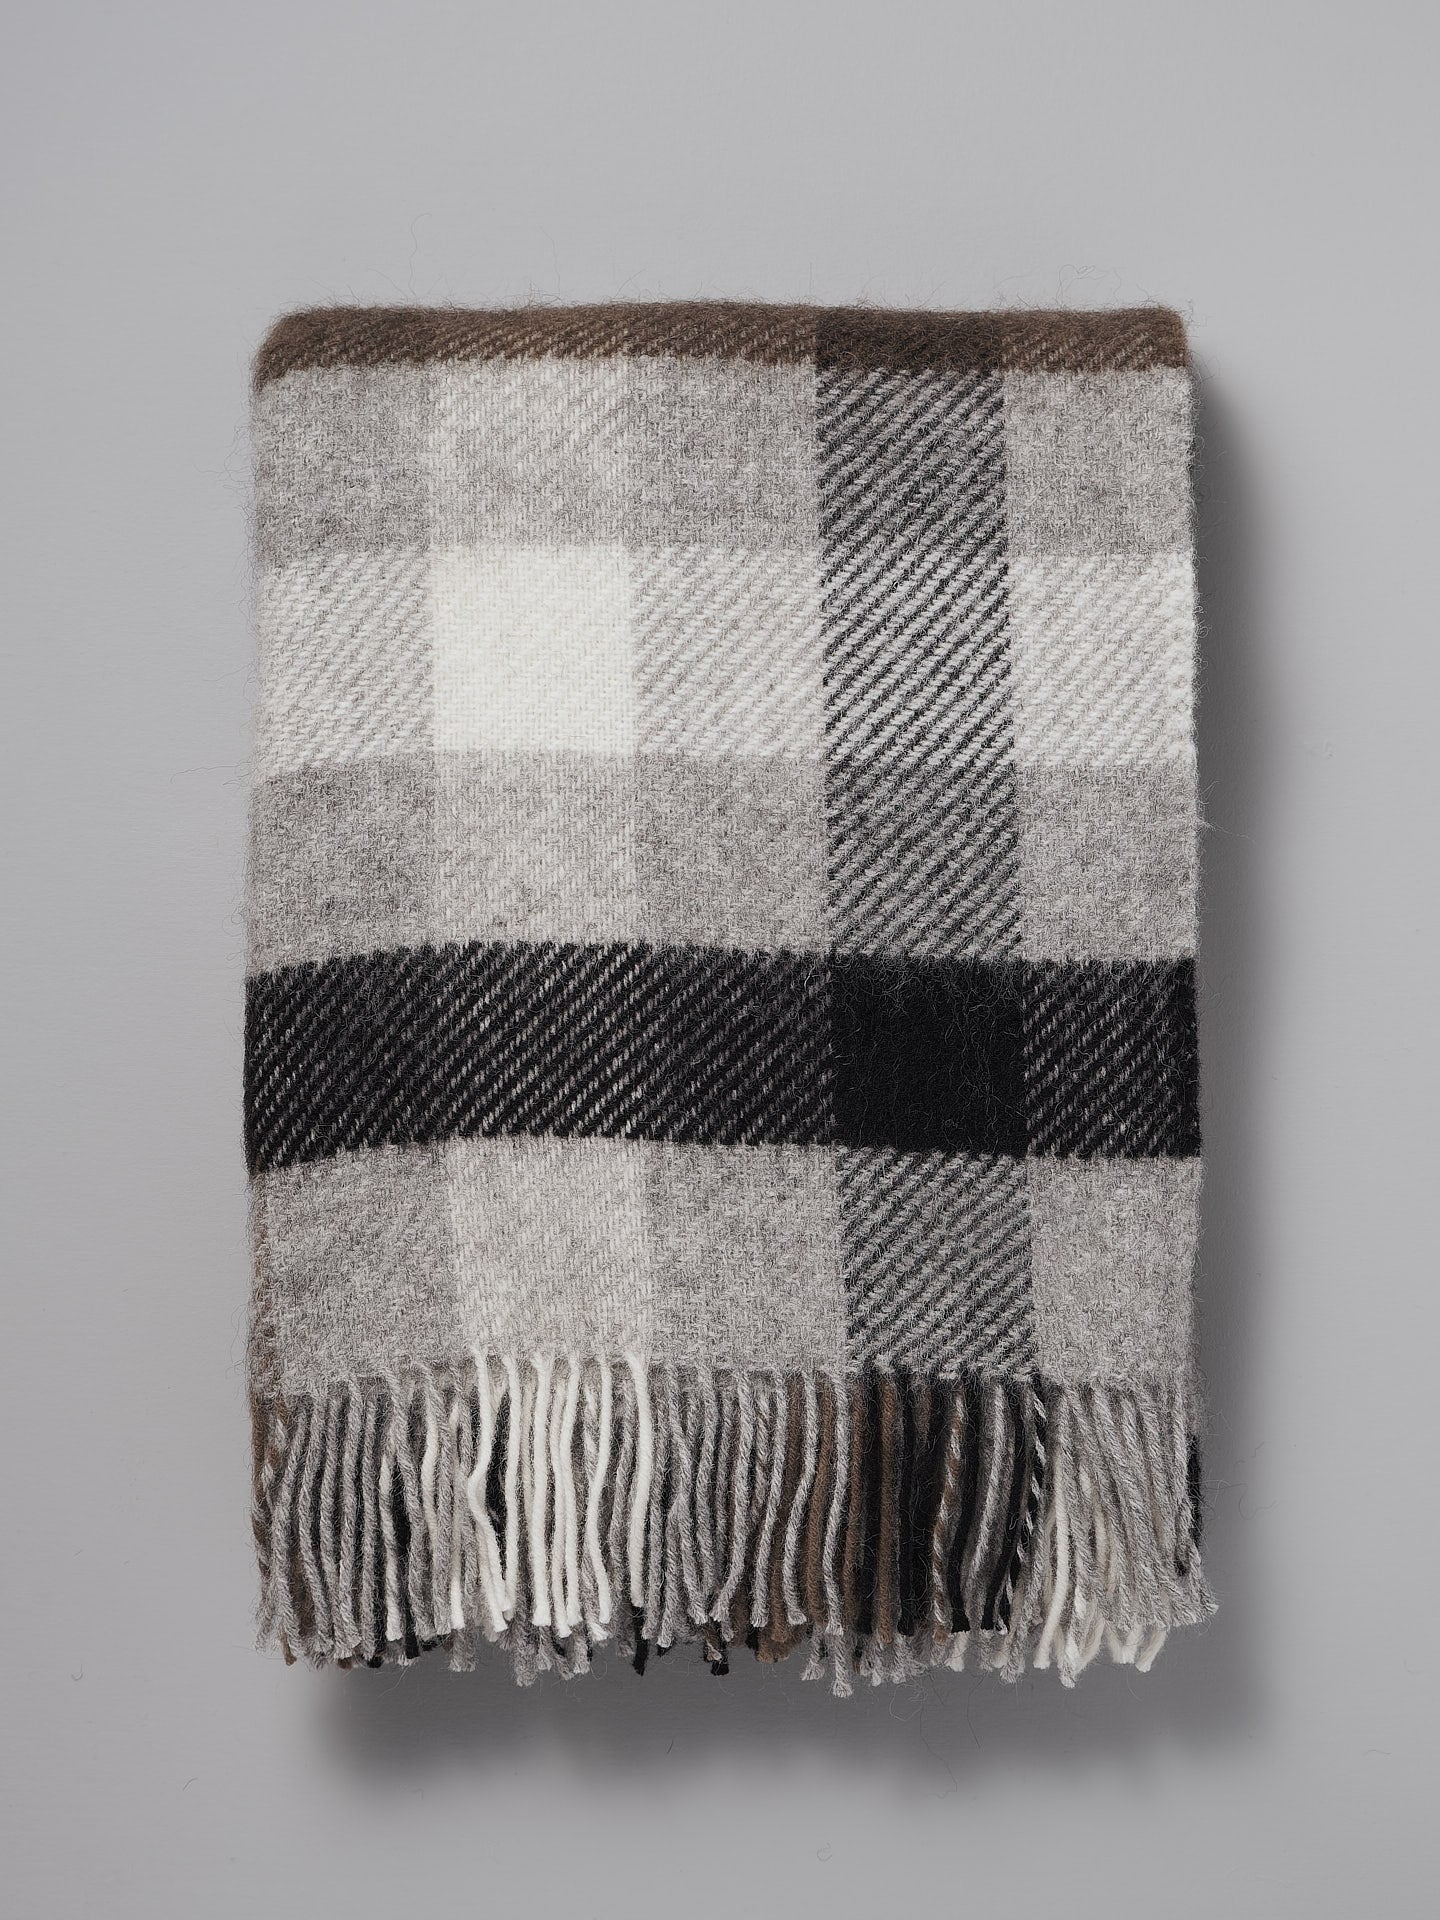 A Klippan Gotland Wool Throw – Multi Grey on a grey background.